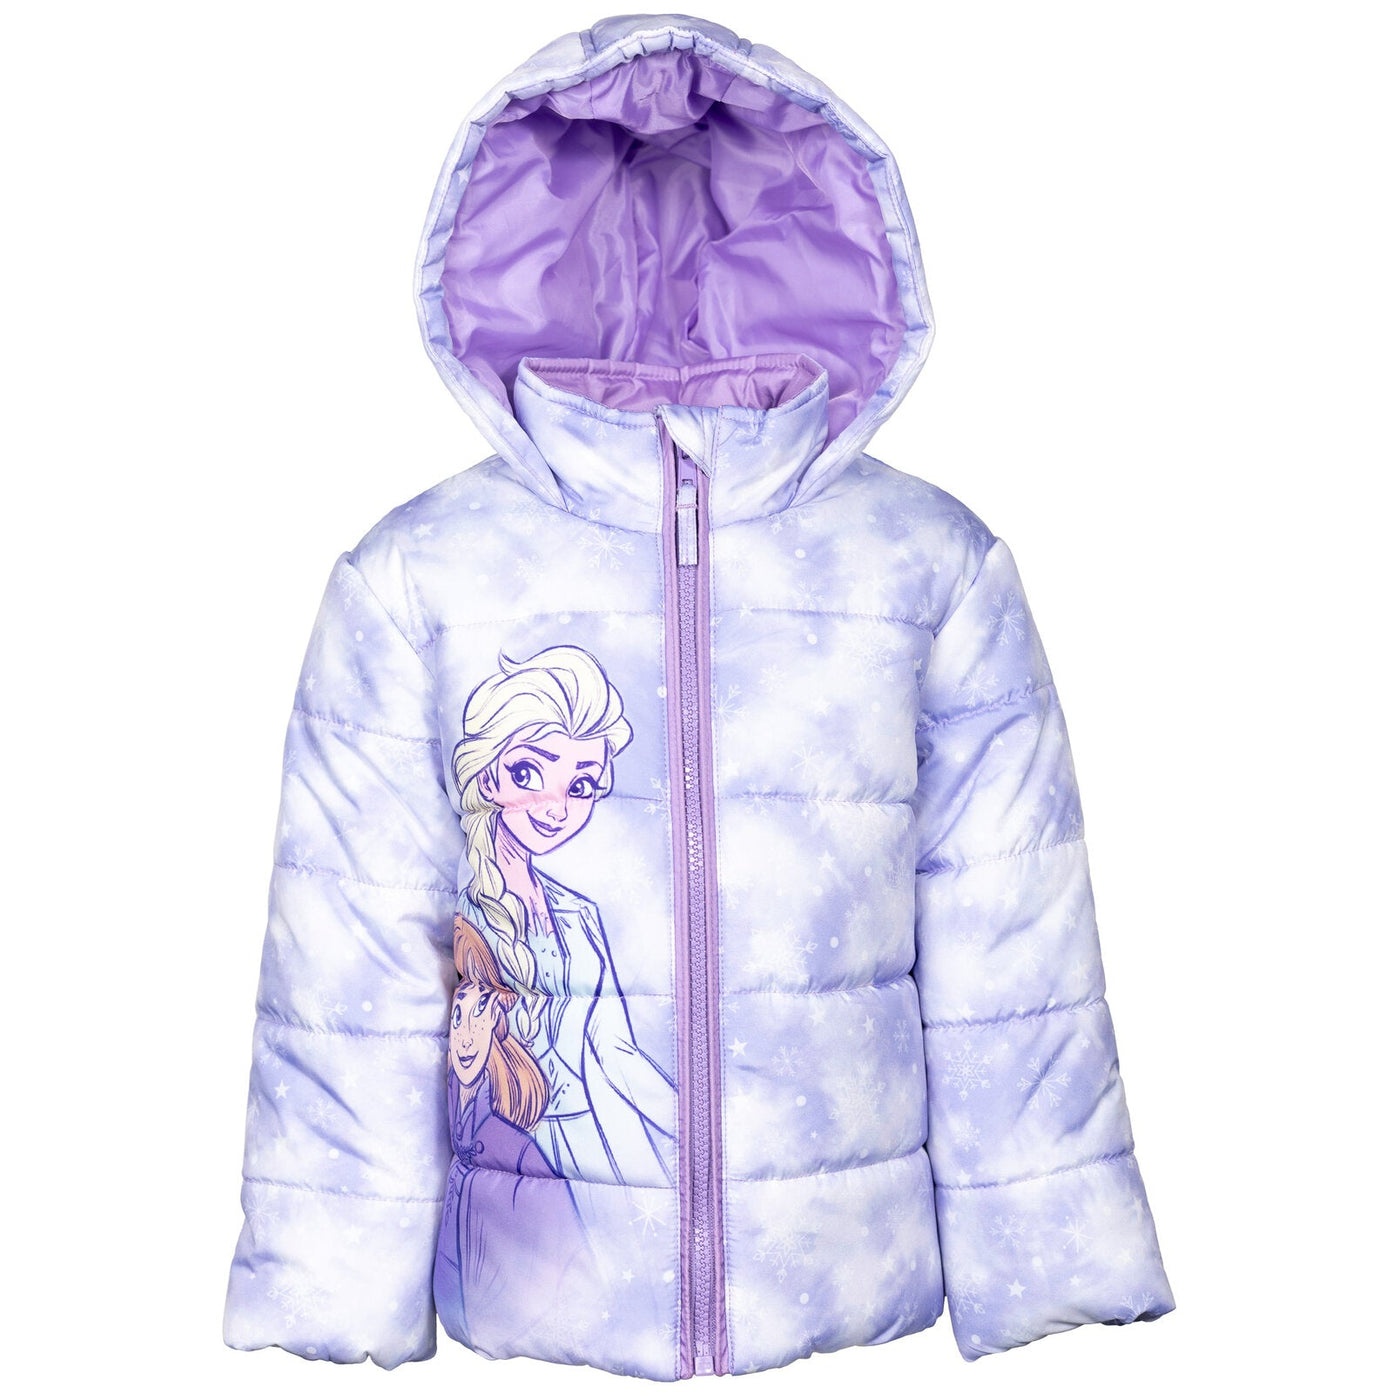 Disney Frozen Zip Up Winter Coat Puffer Jacket - imagikids